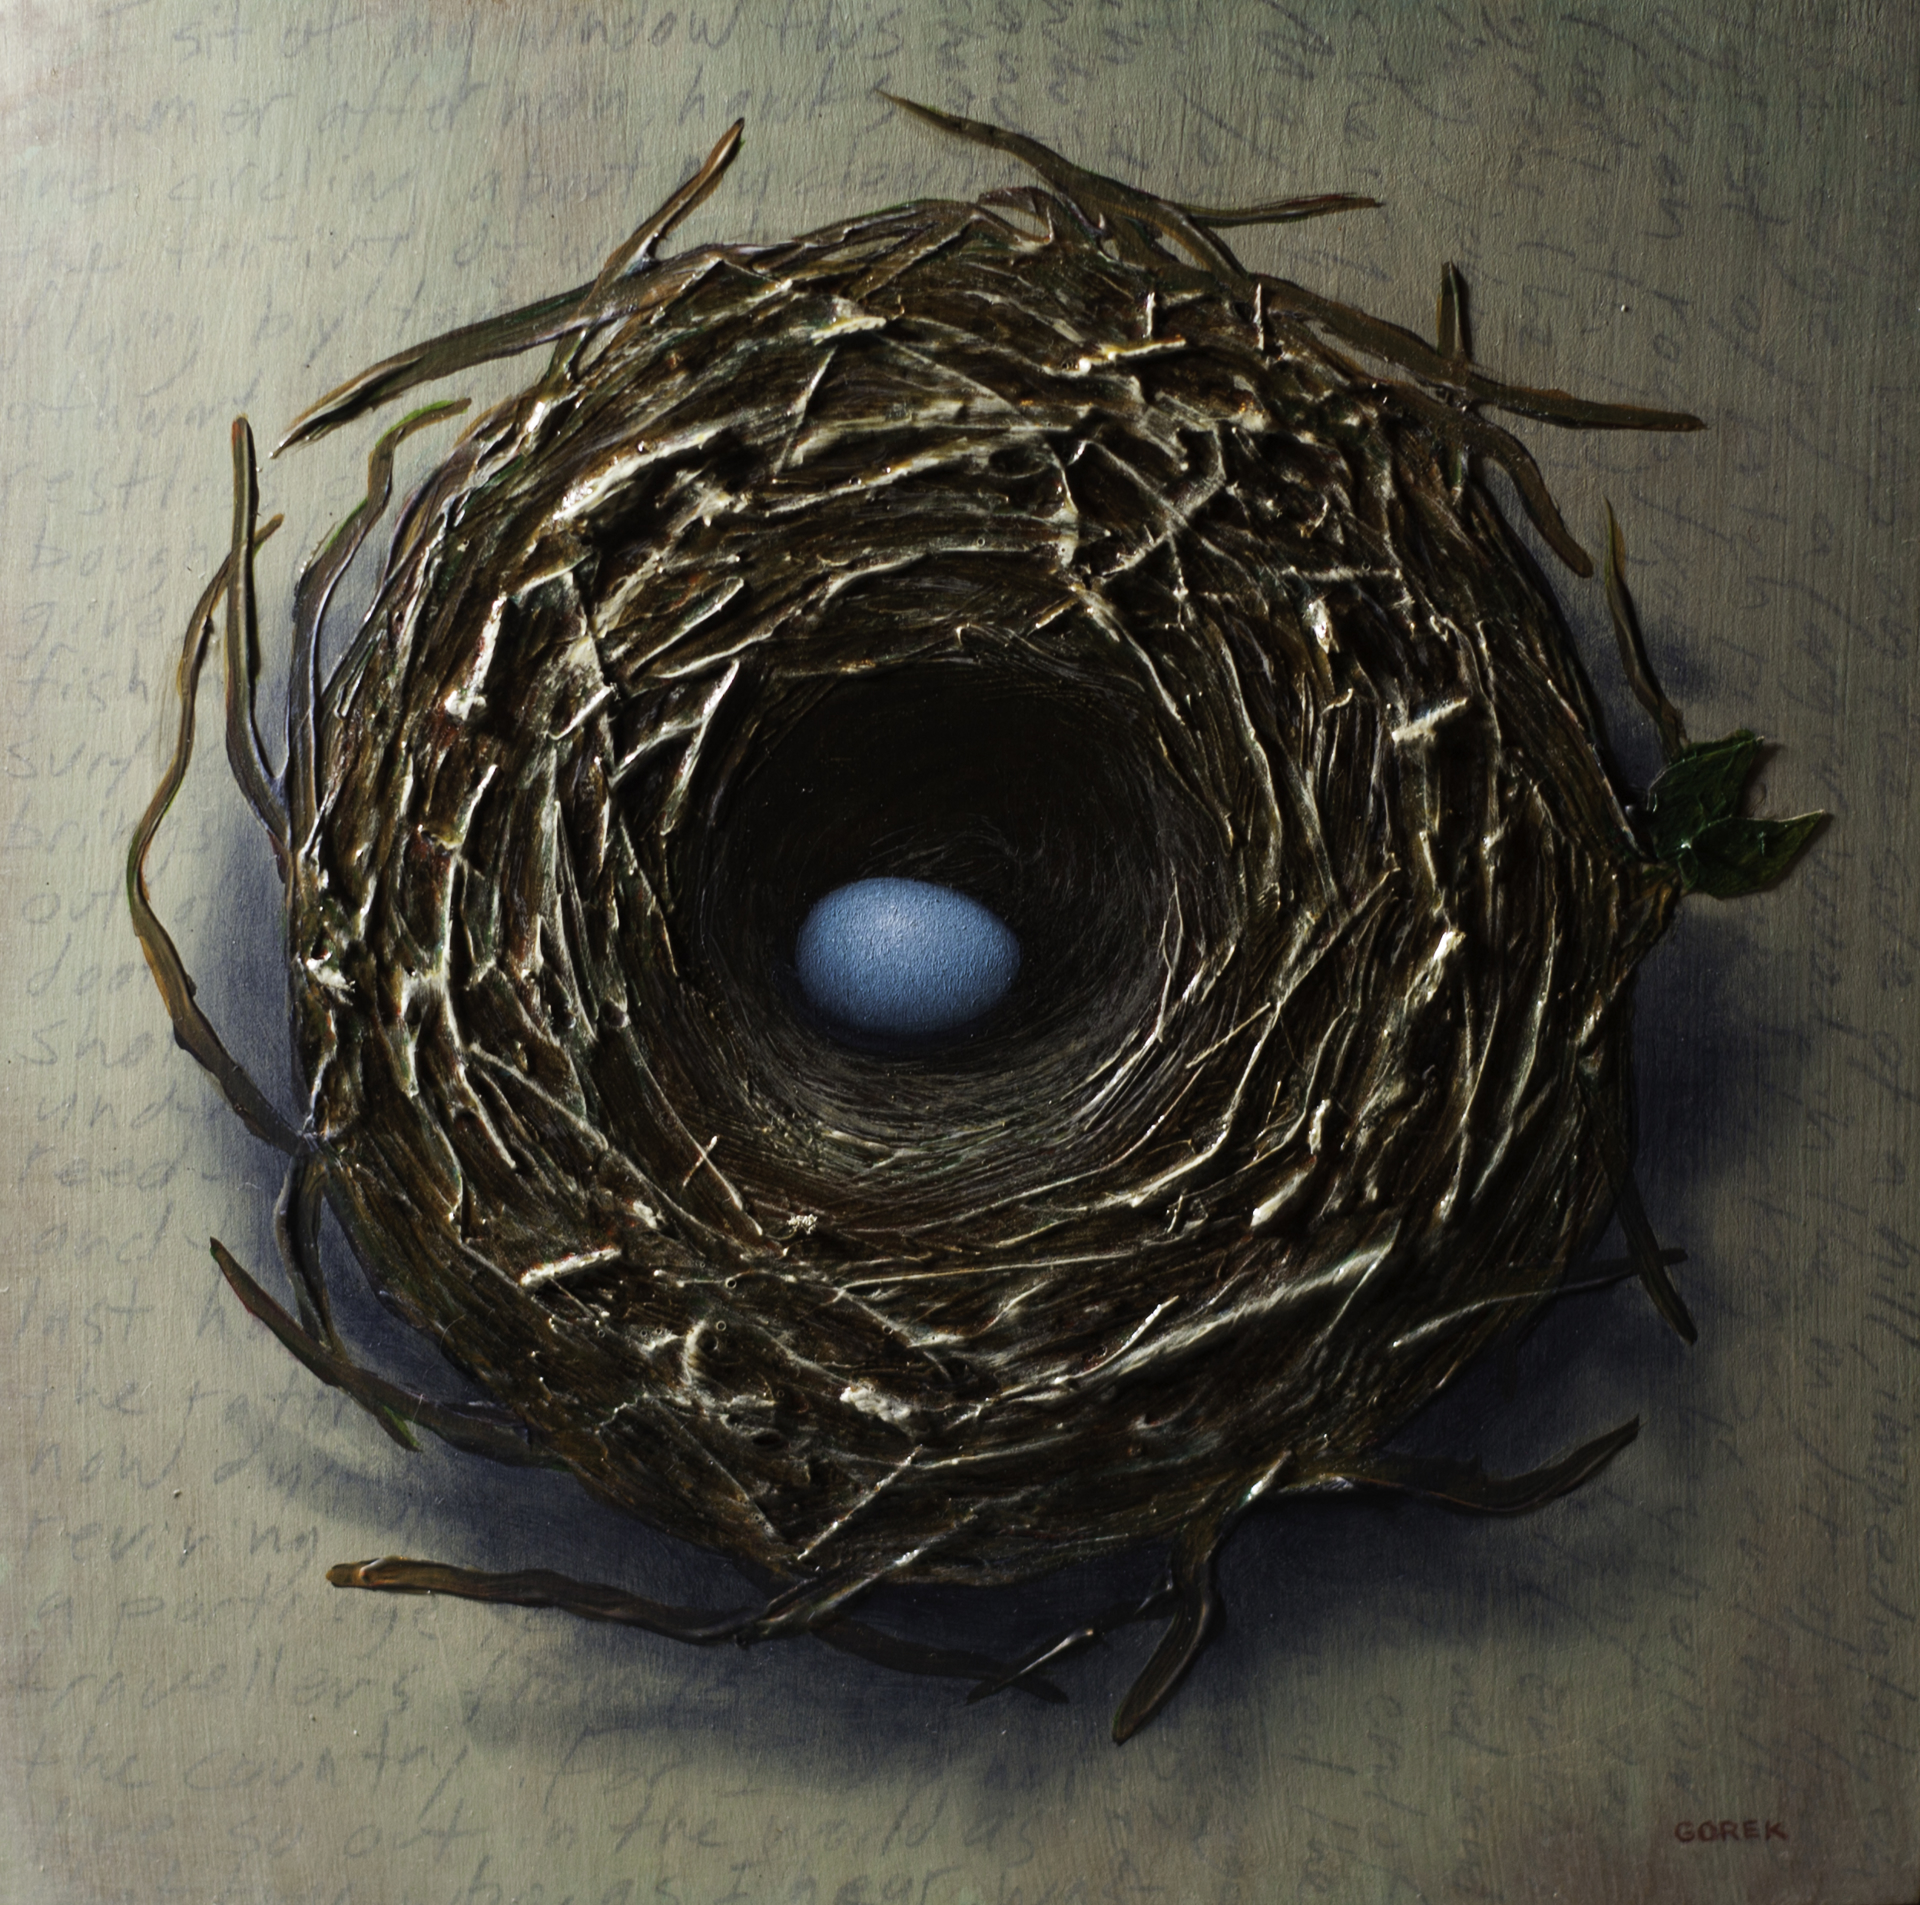 Bird's Nest, One Egg by Thane Gorek